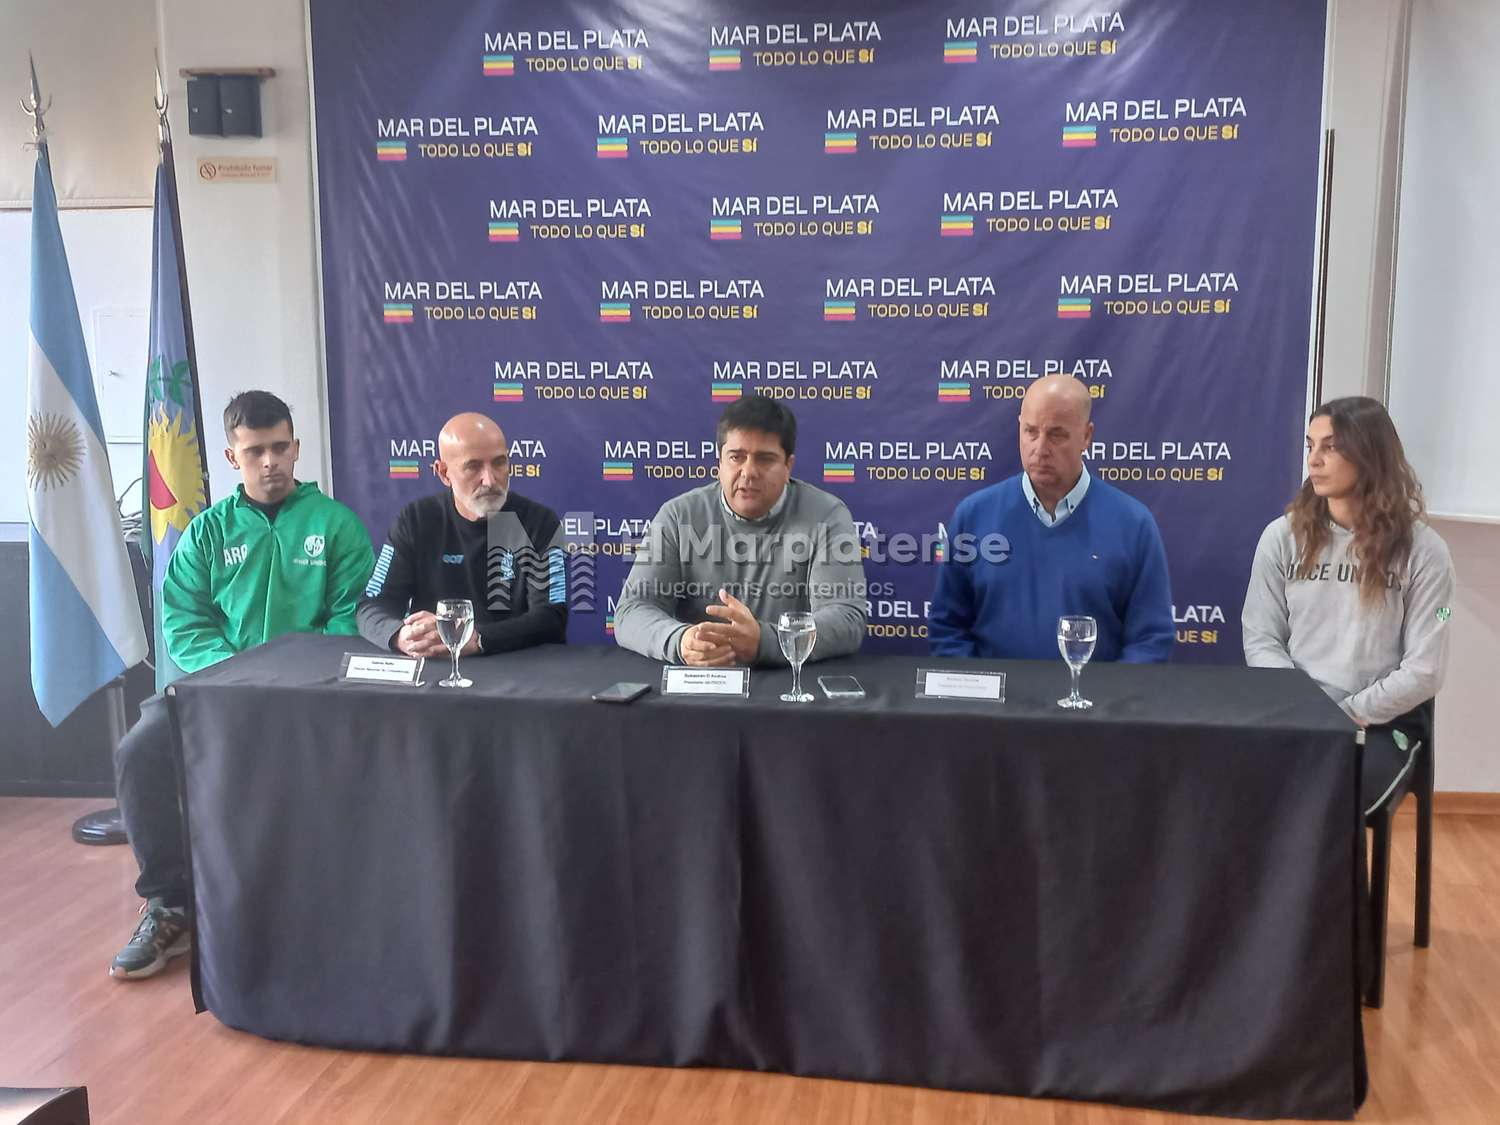 Torneo Nacional de Clubes de Handball: "Hicimos todo para que sea realidad en Mar del Plata"